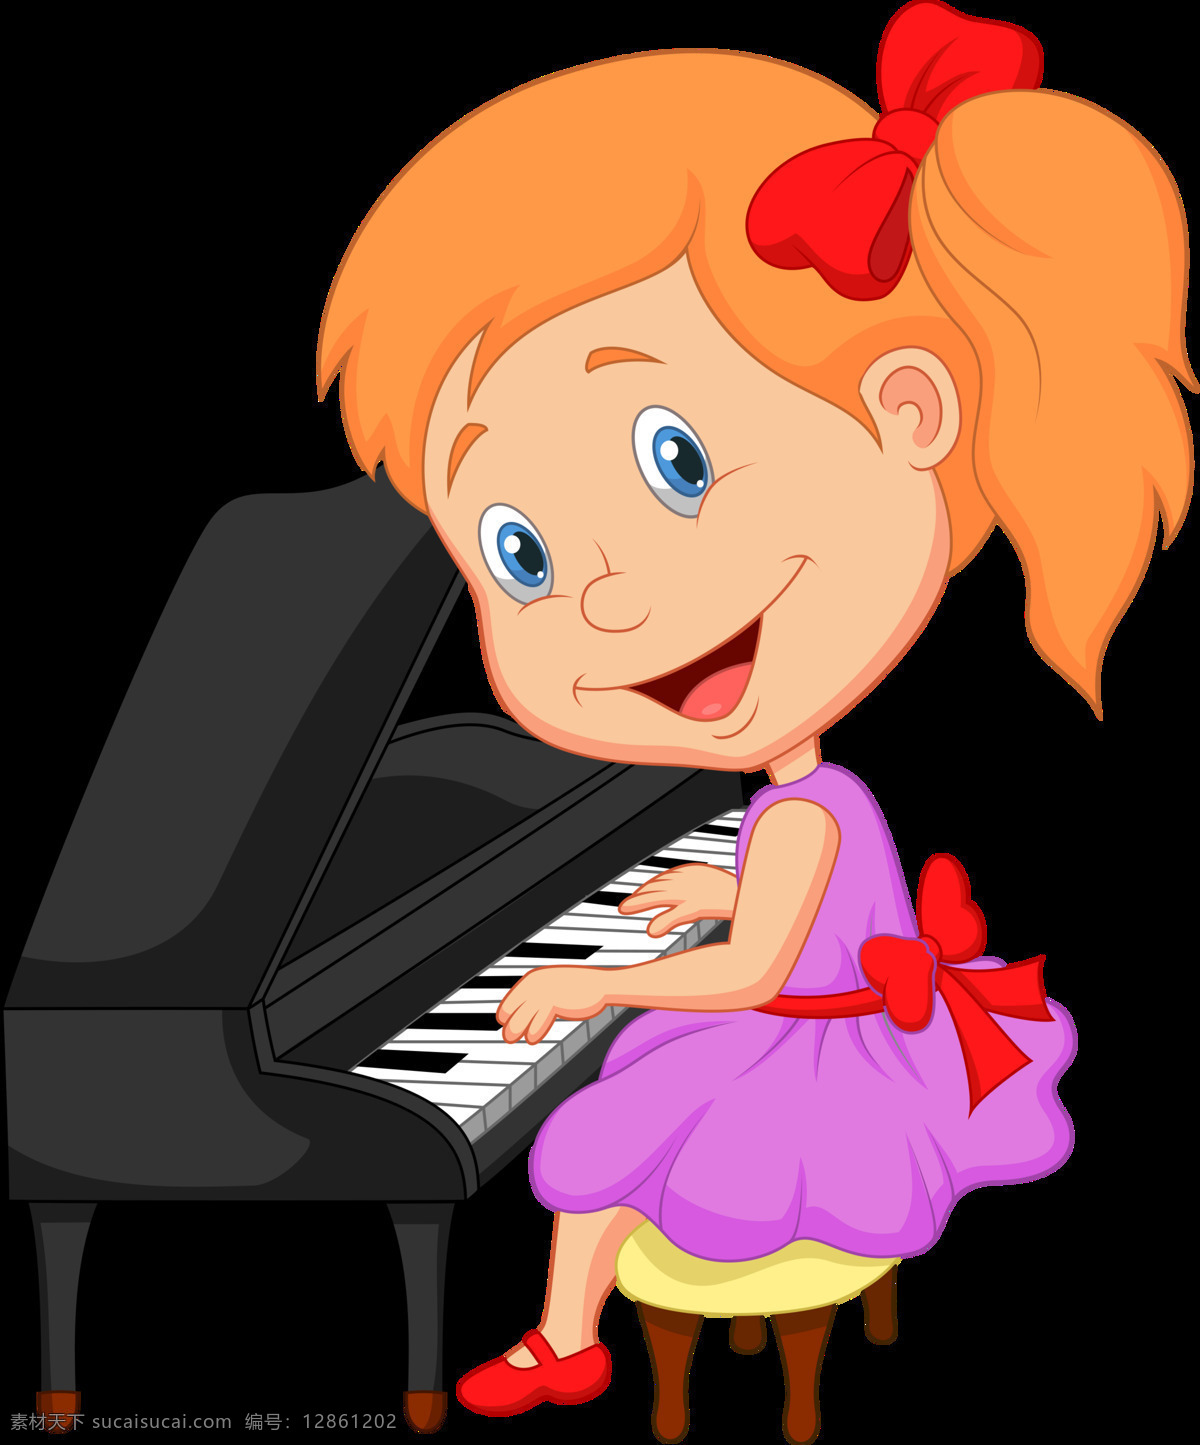 创意 卡通 儿童 钢琴 元素 钢琴海报 钢琴培训 钢琴素材 钢琴音乐 钢琴音乐会 钢琴元素 卡通钢琴 音乐 音乐背景 音乐素材 音乐图片 音乐元素